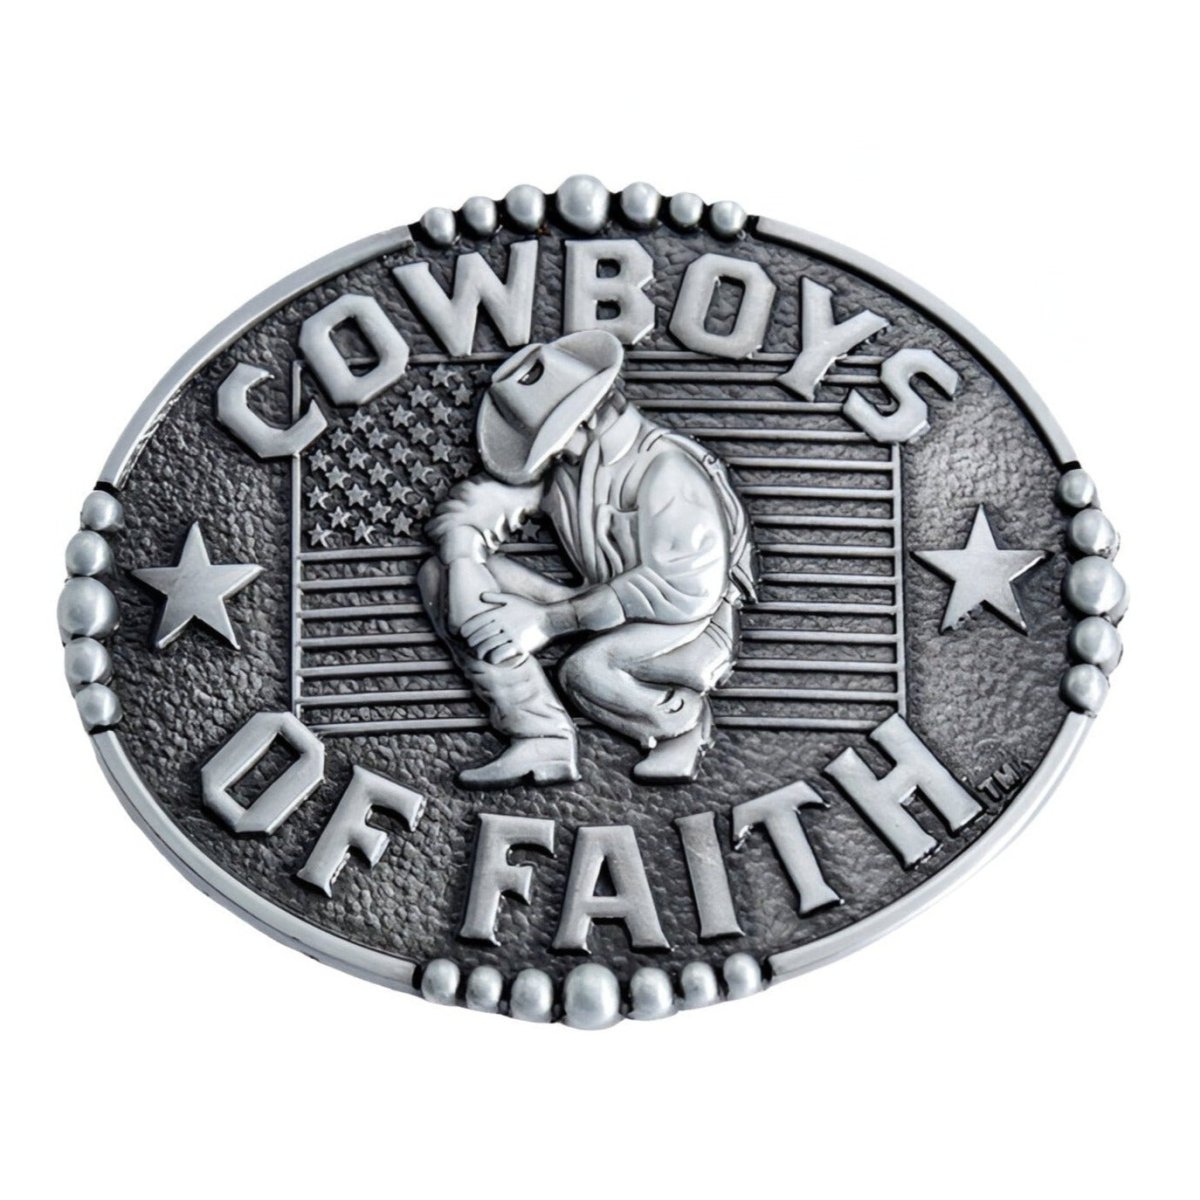 Boucle de ceinture Western, "Cowboys of faith", modèle Travis - La Boutique de la Ceinture